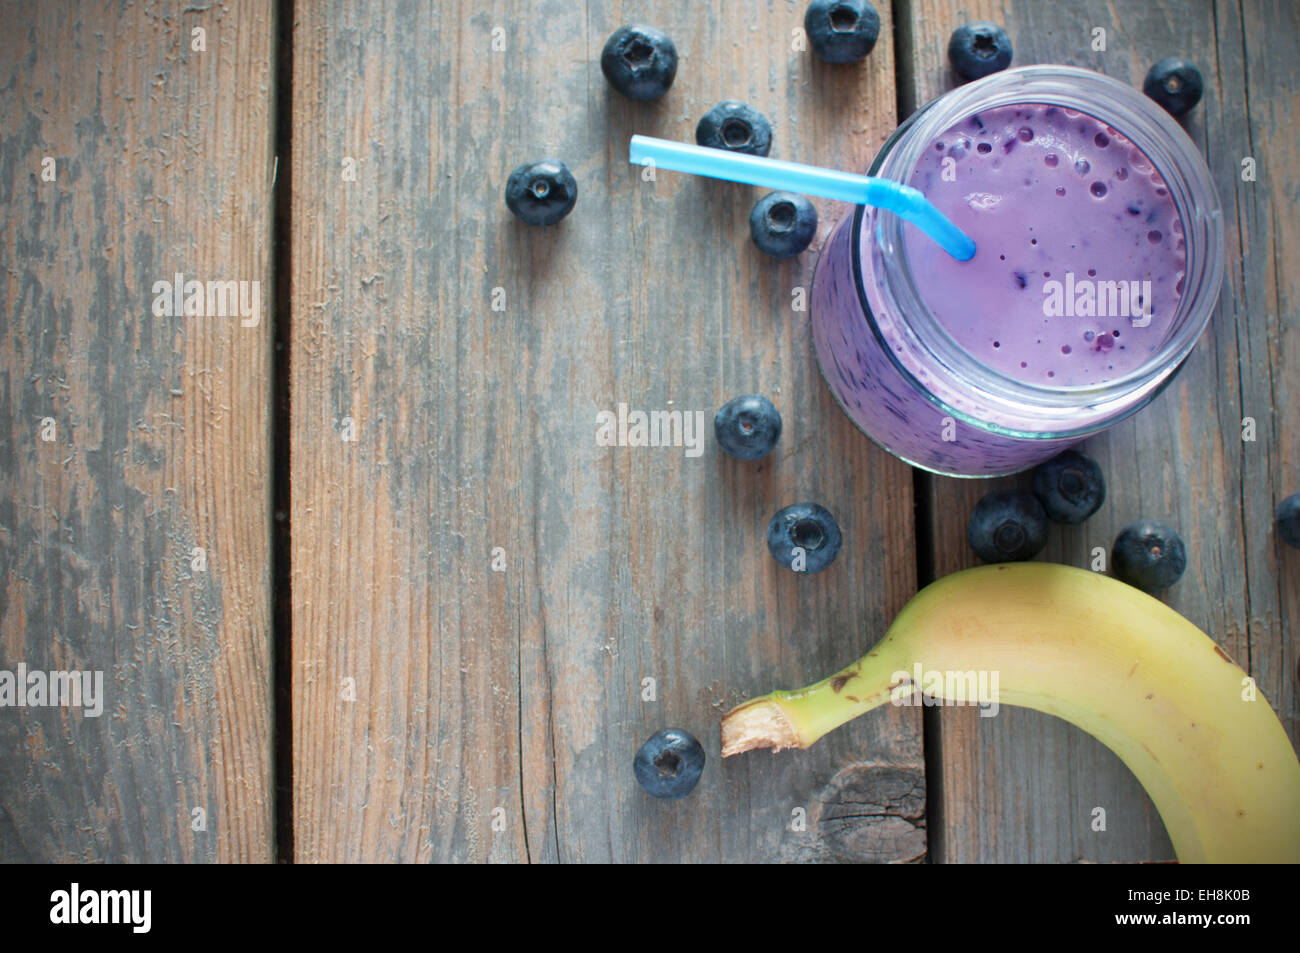 Heidelbeer-Smoothie mit Banane und Früchten auf einem hölzernen Hintergrund Stockfoto